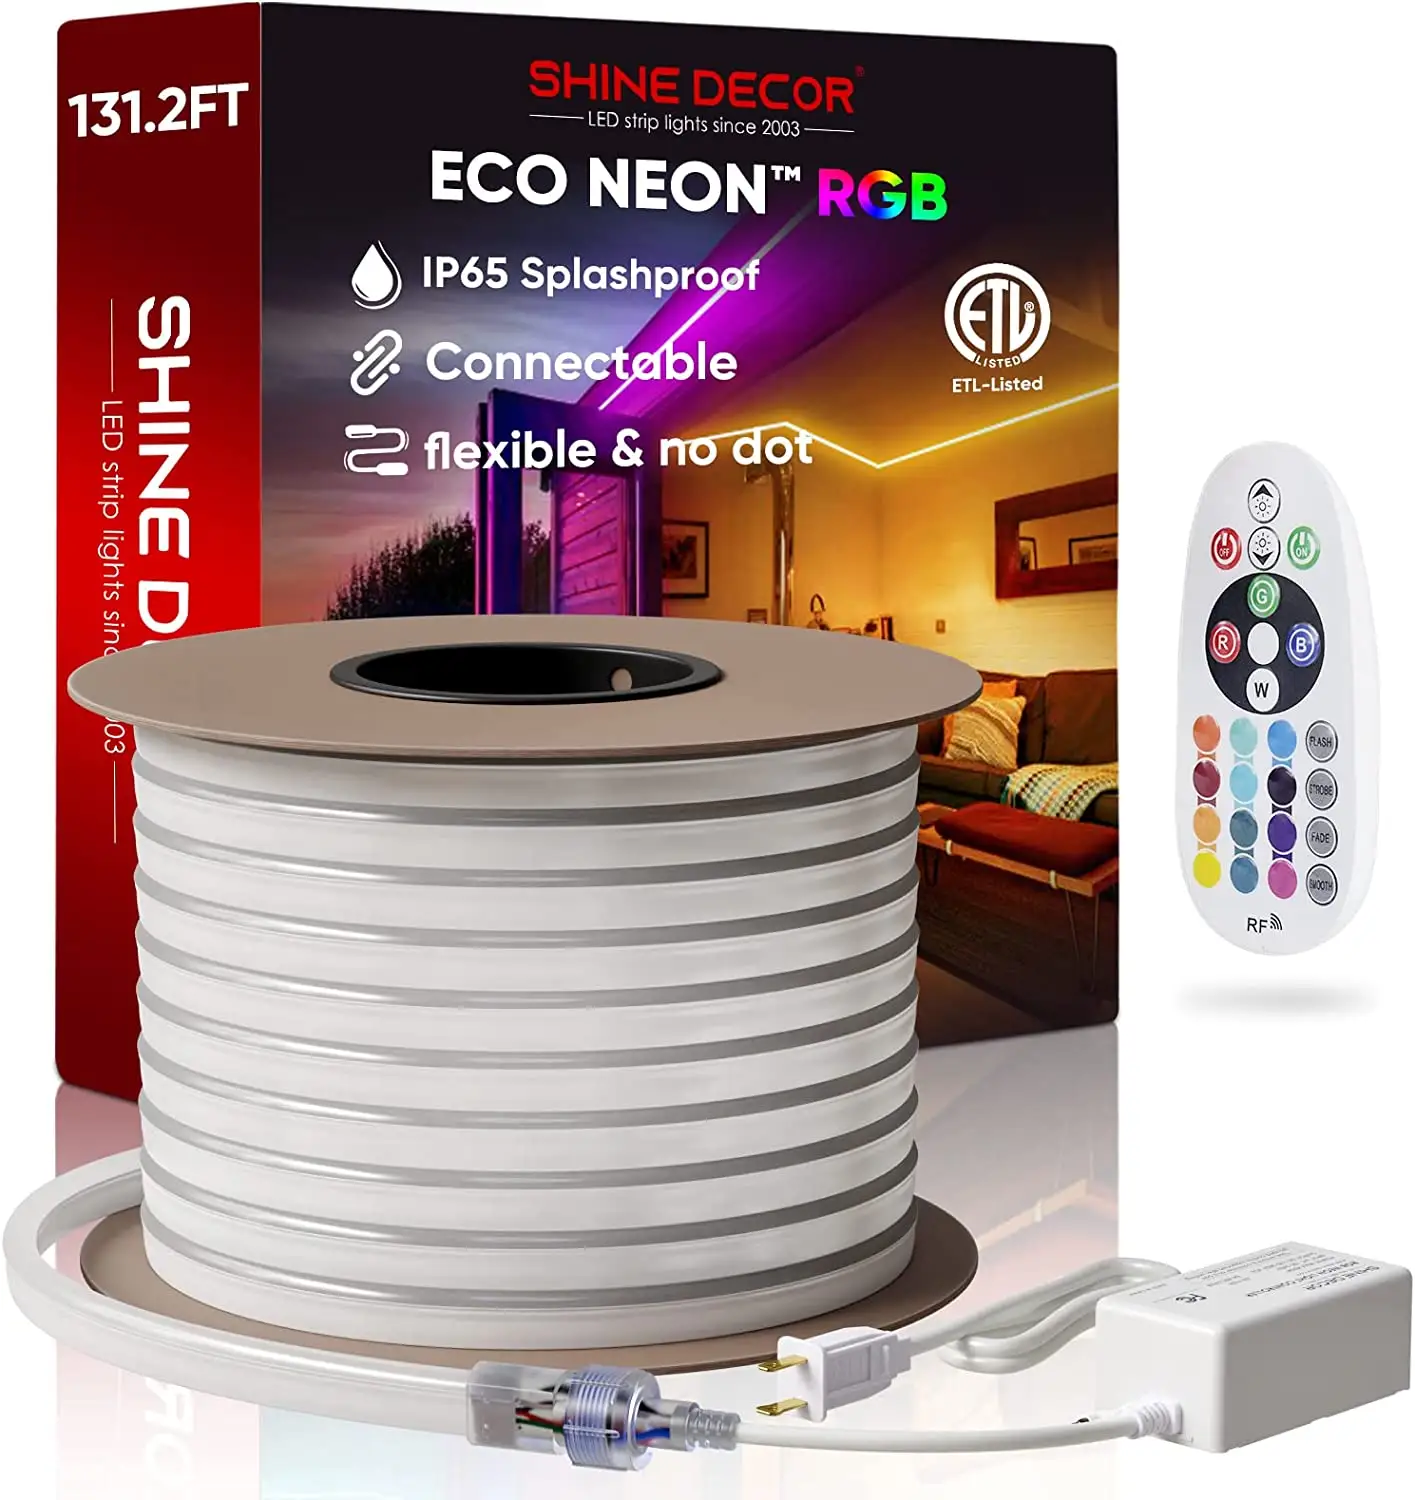 Hotsale Duurzame Flexibele Rgb Led Neon Verlichting Voor Vakanties Decoratie Grote Led Neon Strip